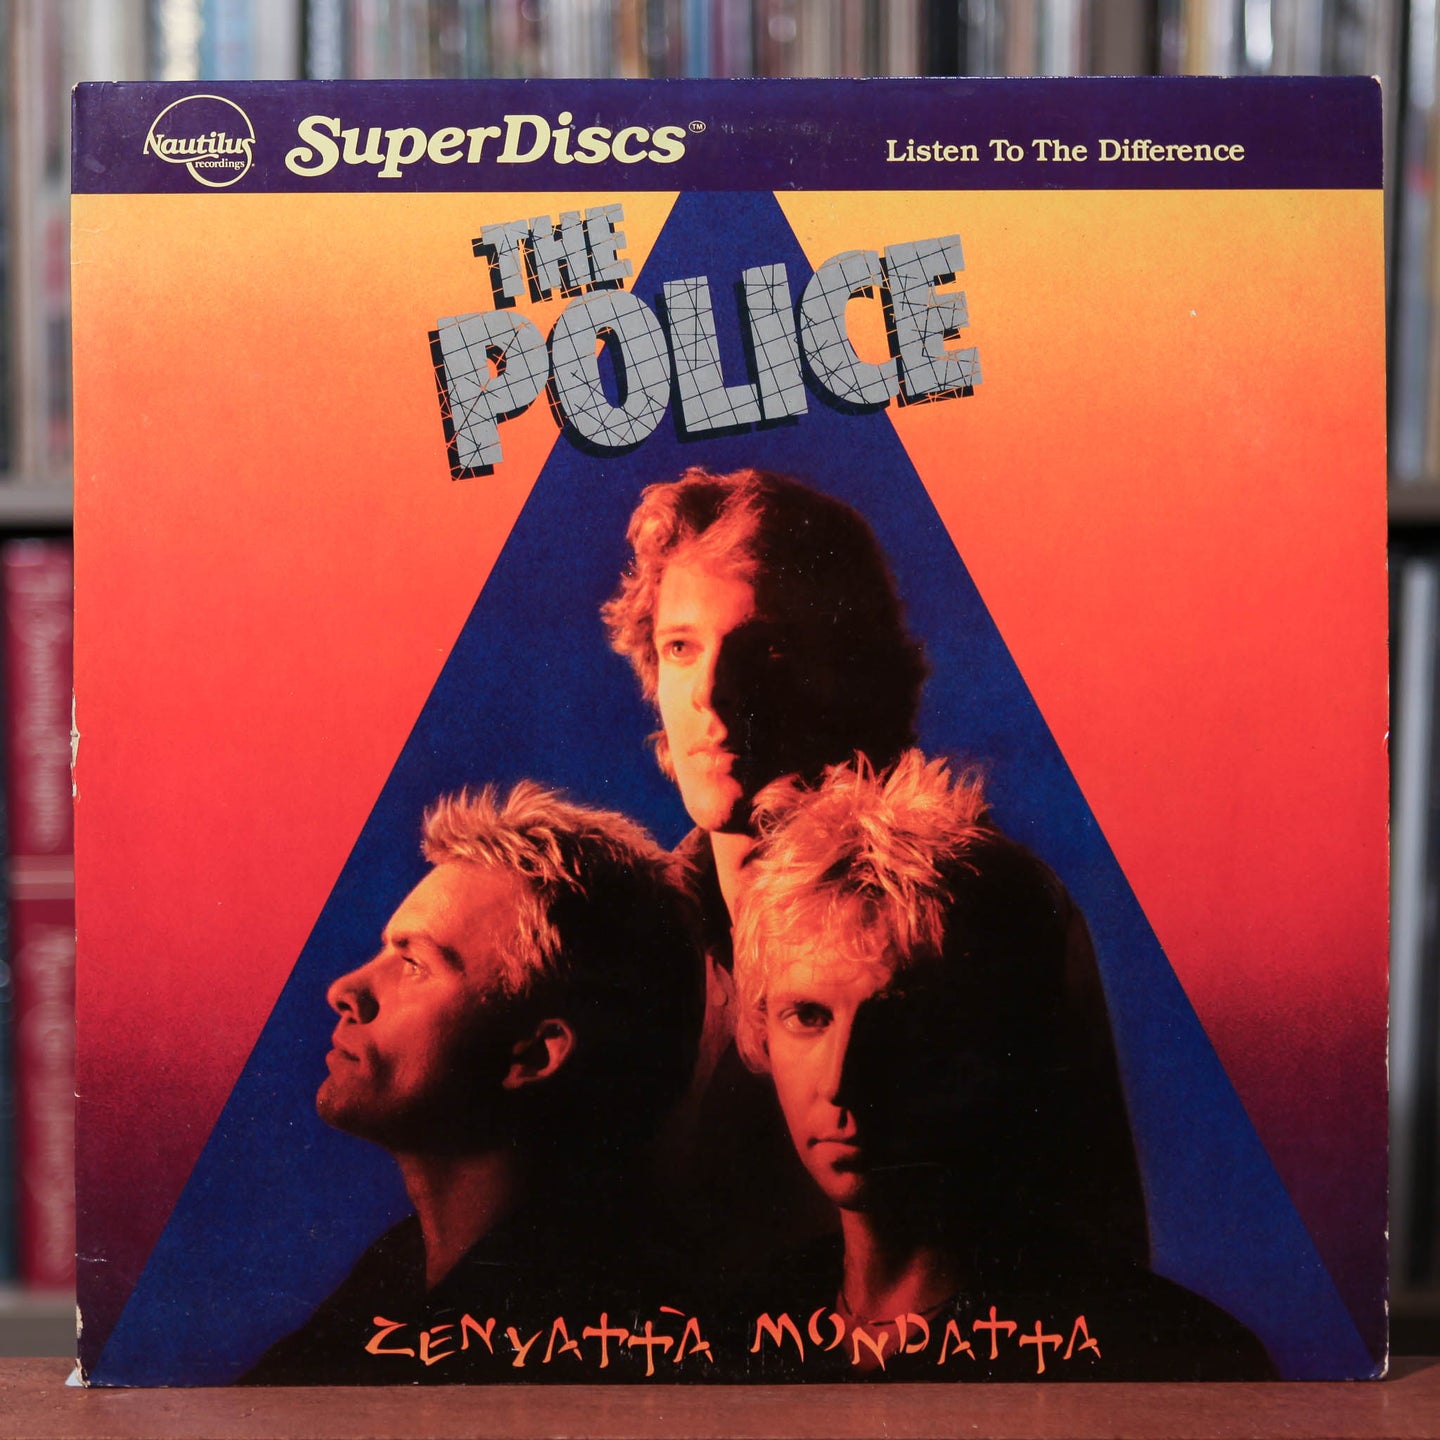 Police - Zenyatta Mondatta - Audiophile SuperDisc -1981 Nautilus Recor